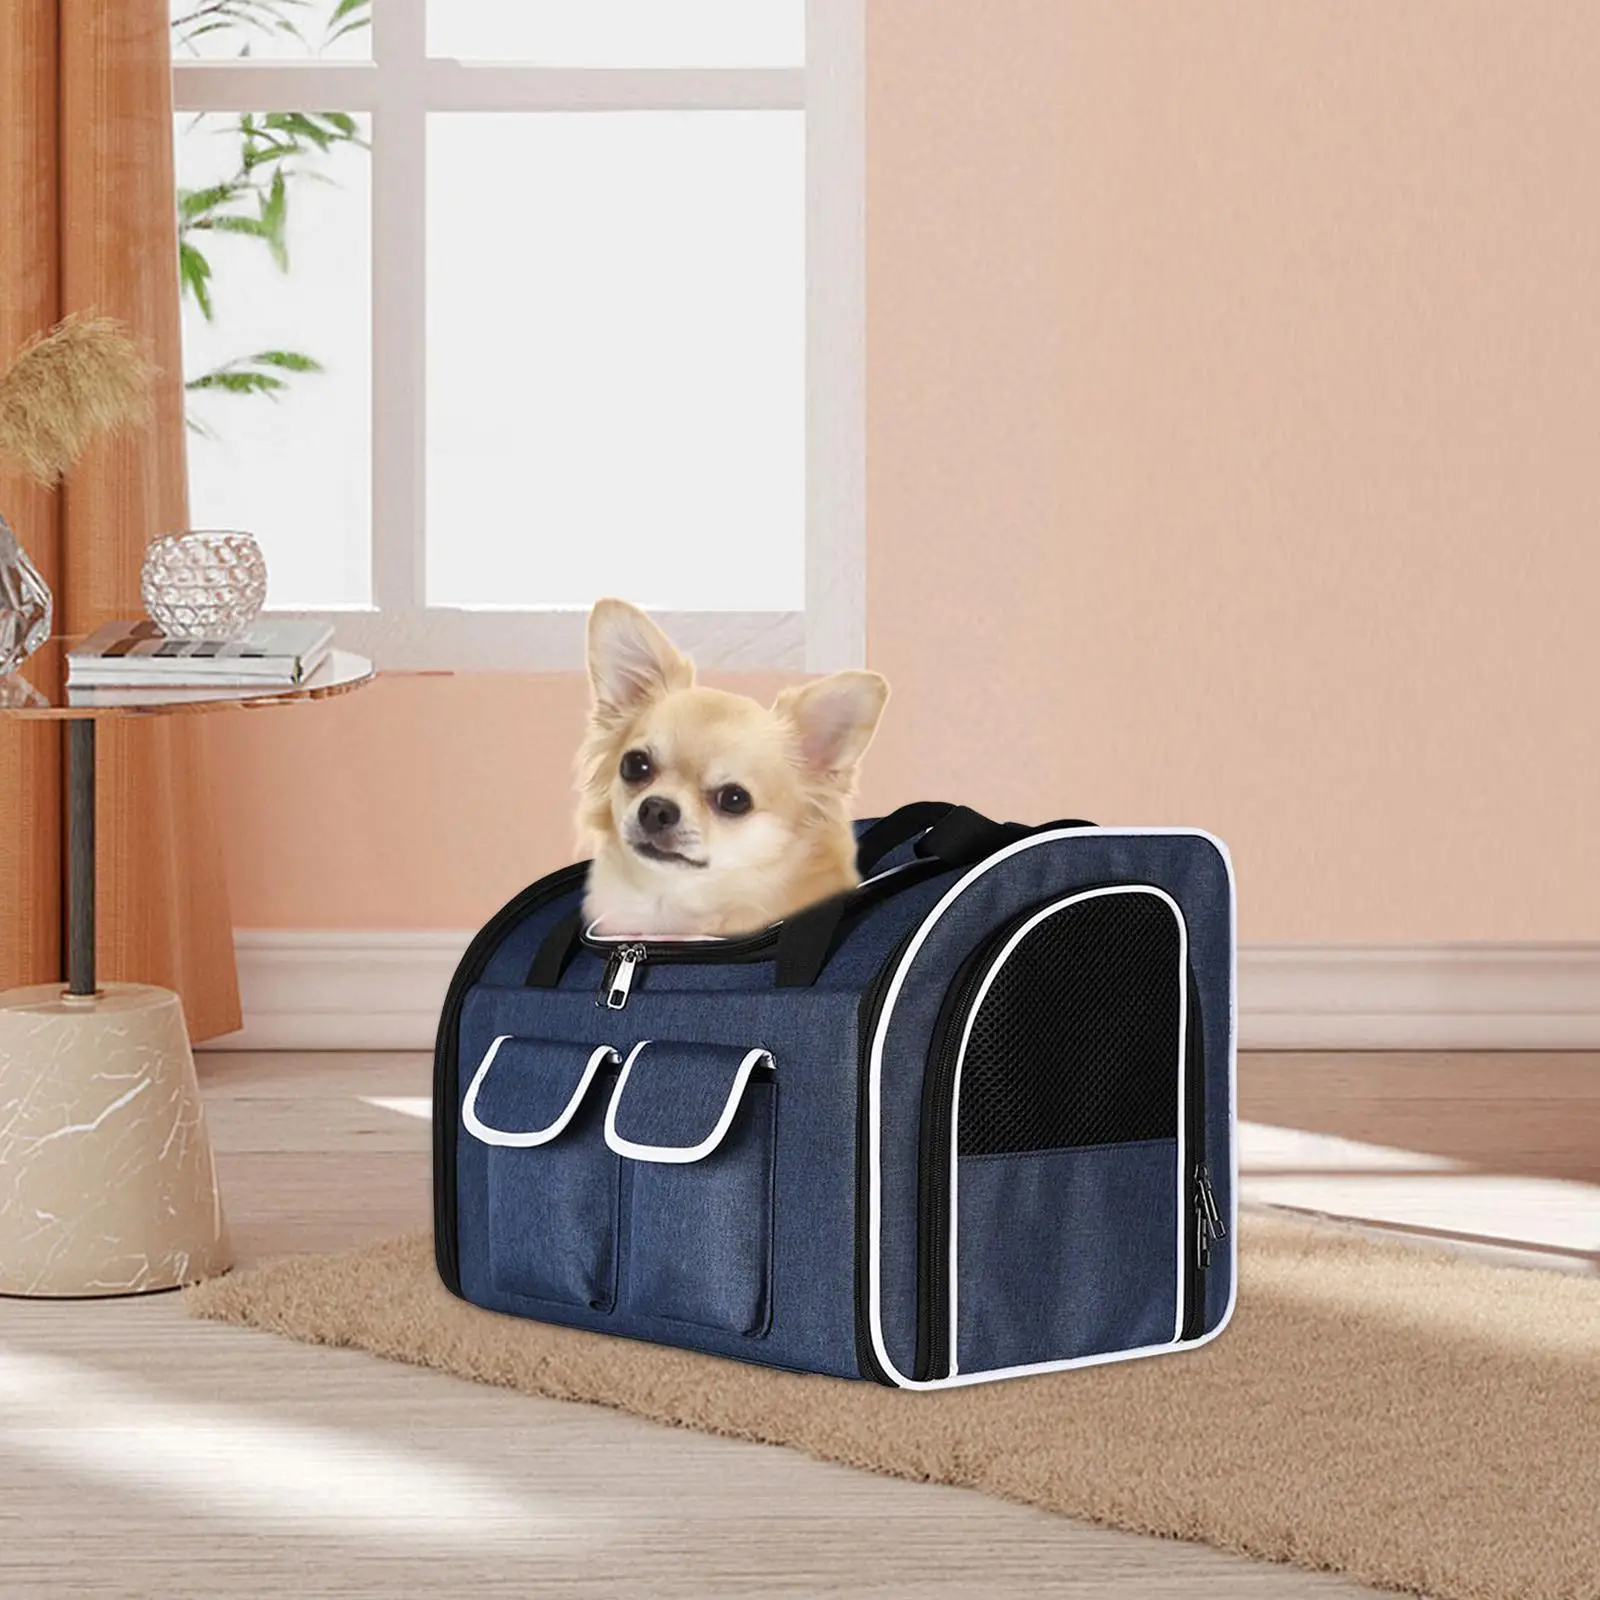 Pet Cat Carrier Backpack Shoulder Strap Carrying Bag Ventilation Breathable Dog Carrier Pet Travel Bag for Walking Outdoor Use